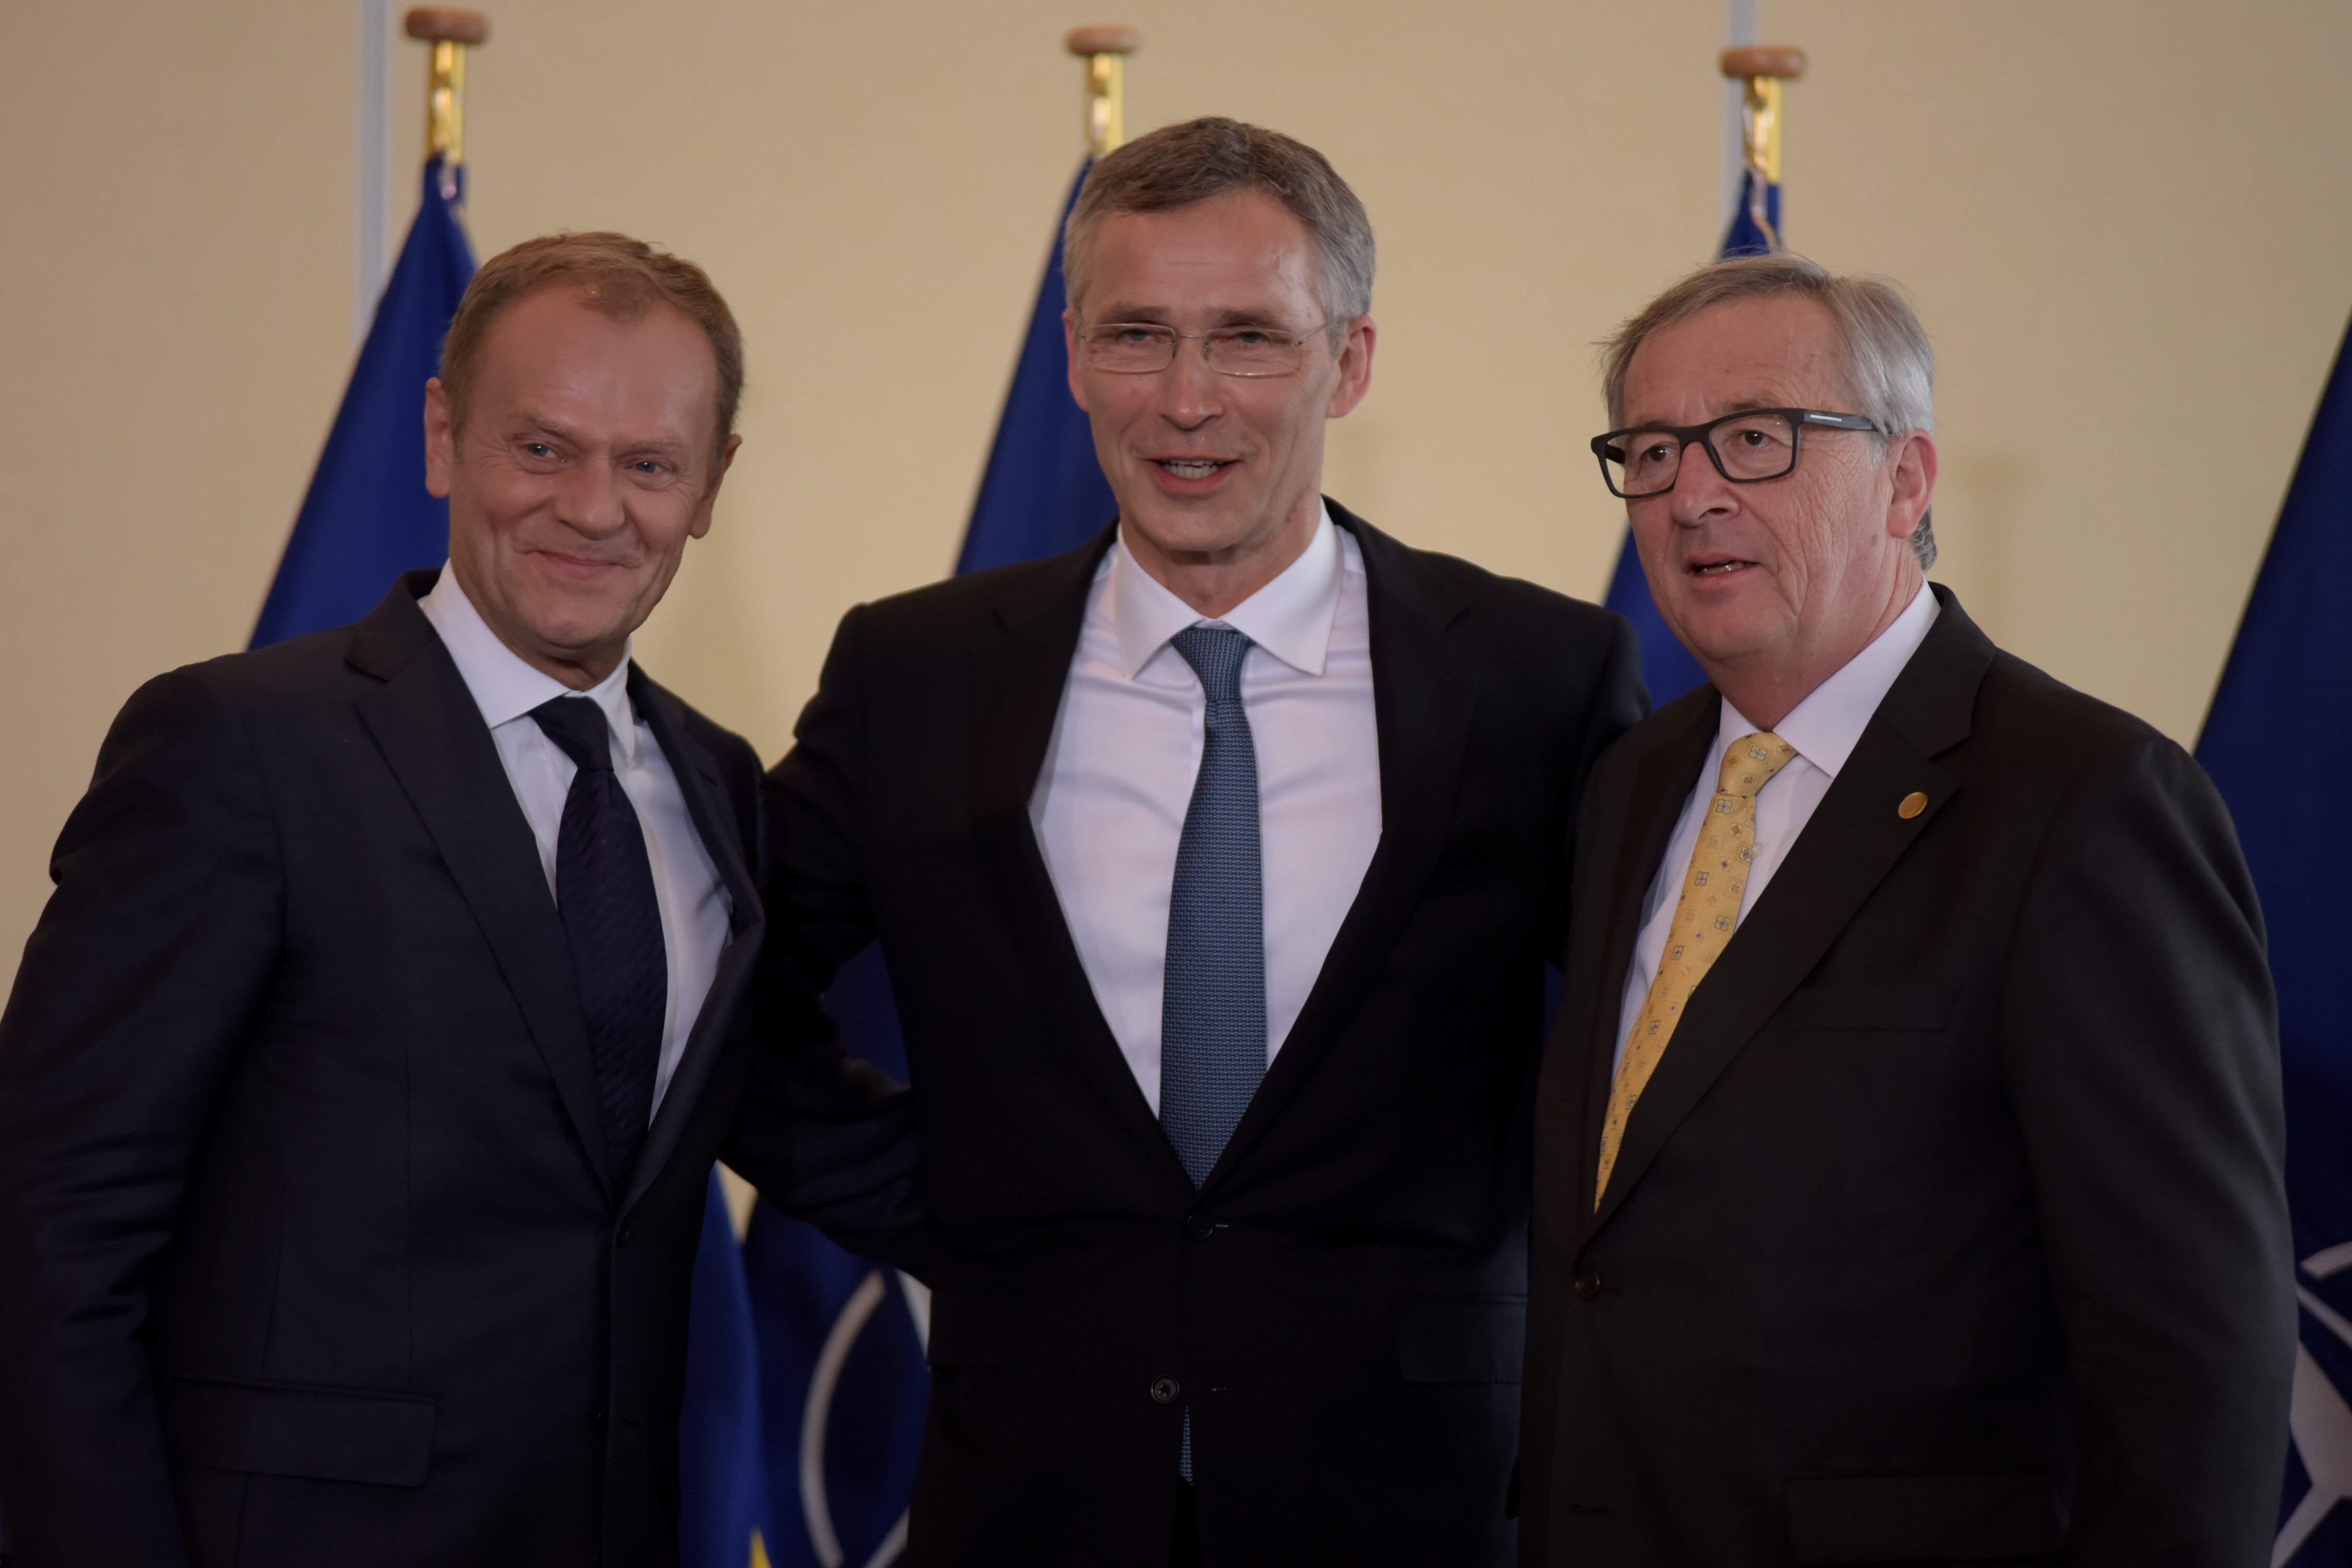 Od lewej: Przewodniczący Rady Europejskiej Donald Tusk, Sekretarz Generalny NATO Jens Stoltenberg i szef Komisji Europejskiej Jean-Claude Juncker